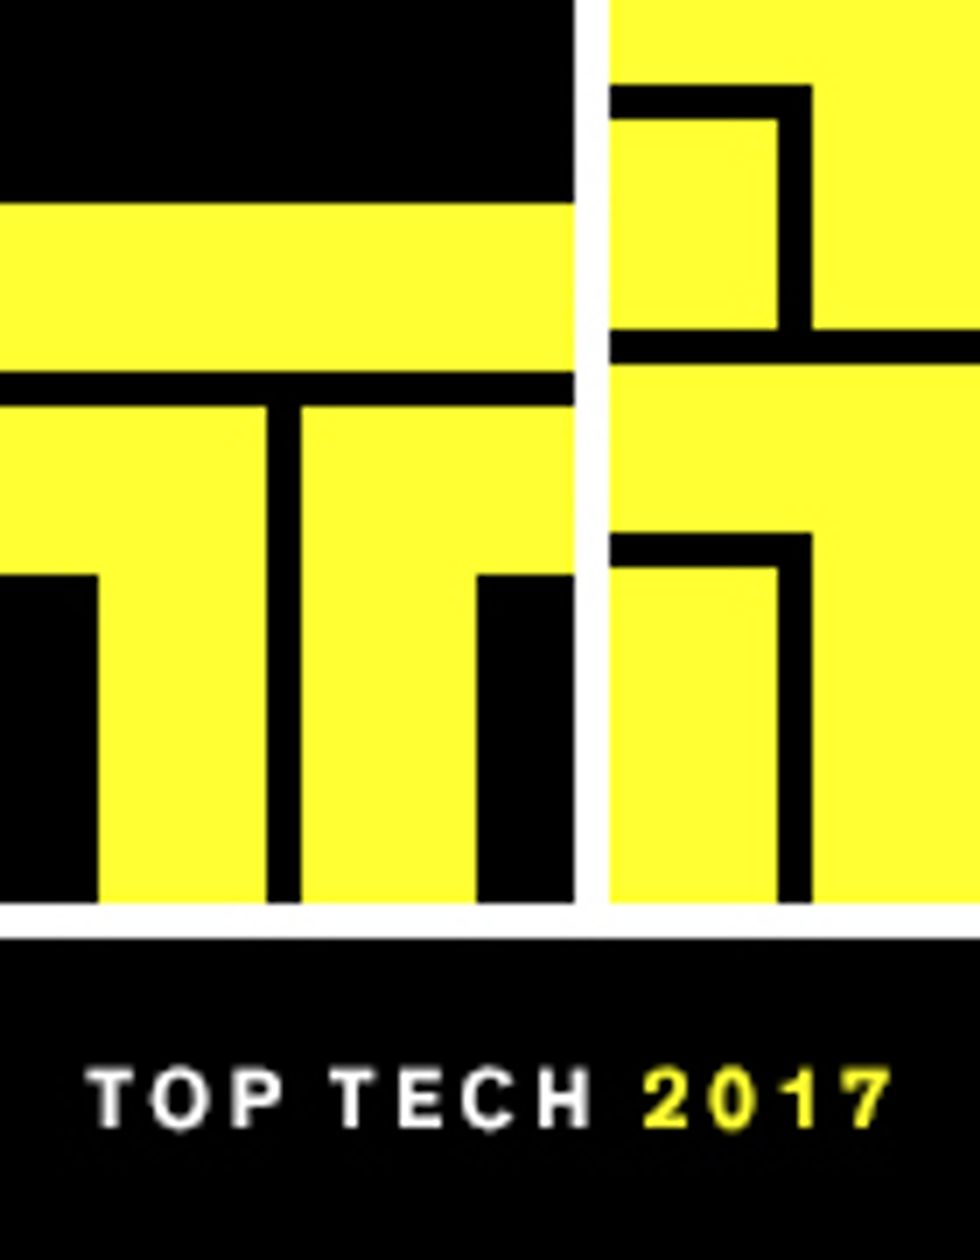 Top Tech 2017 logo